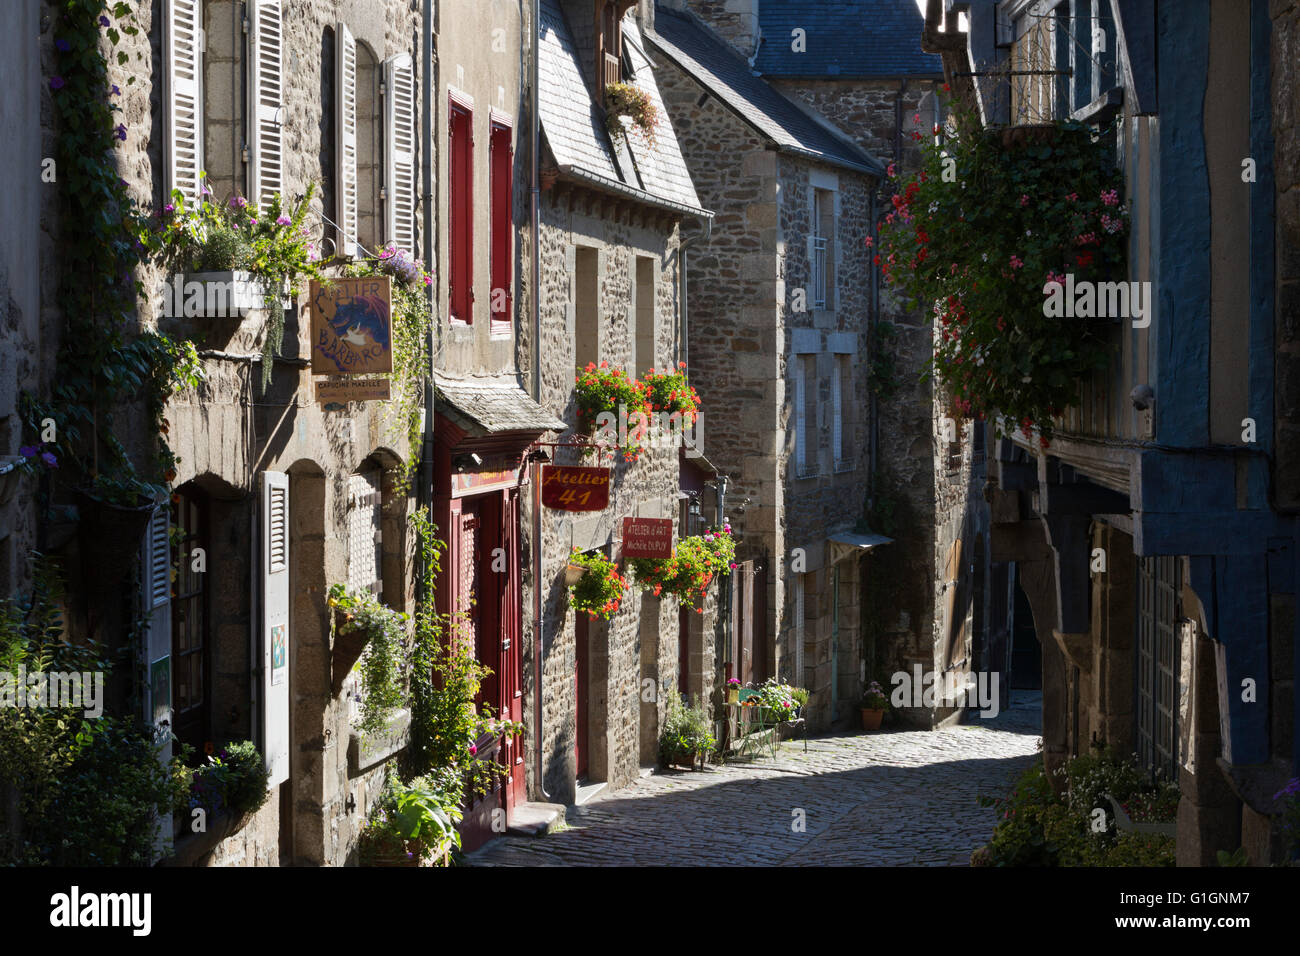 Rue Pavée et maisons en pierre typiquement breton, rue du Petit Four, Dinan, Cotes d'Armor, Bretagne, France, Europe Banque D'Images